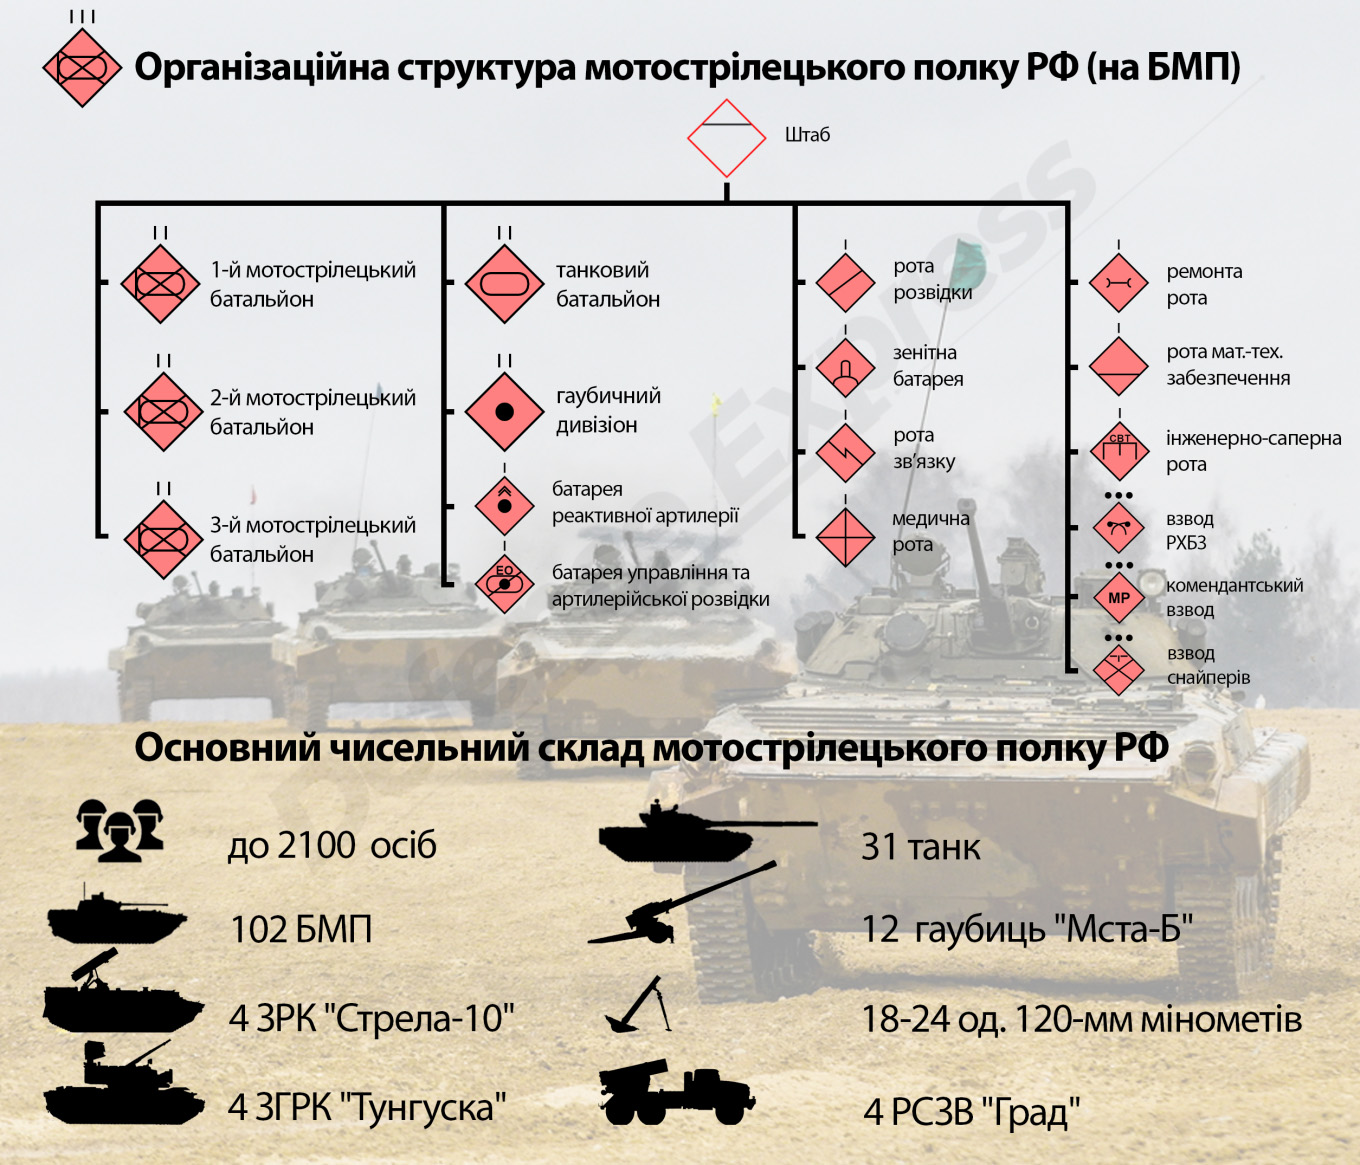 Організаційно-штатна структура мотострілецького полку РФ